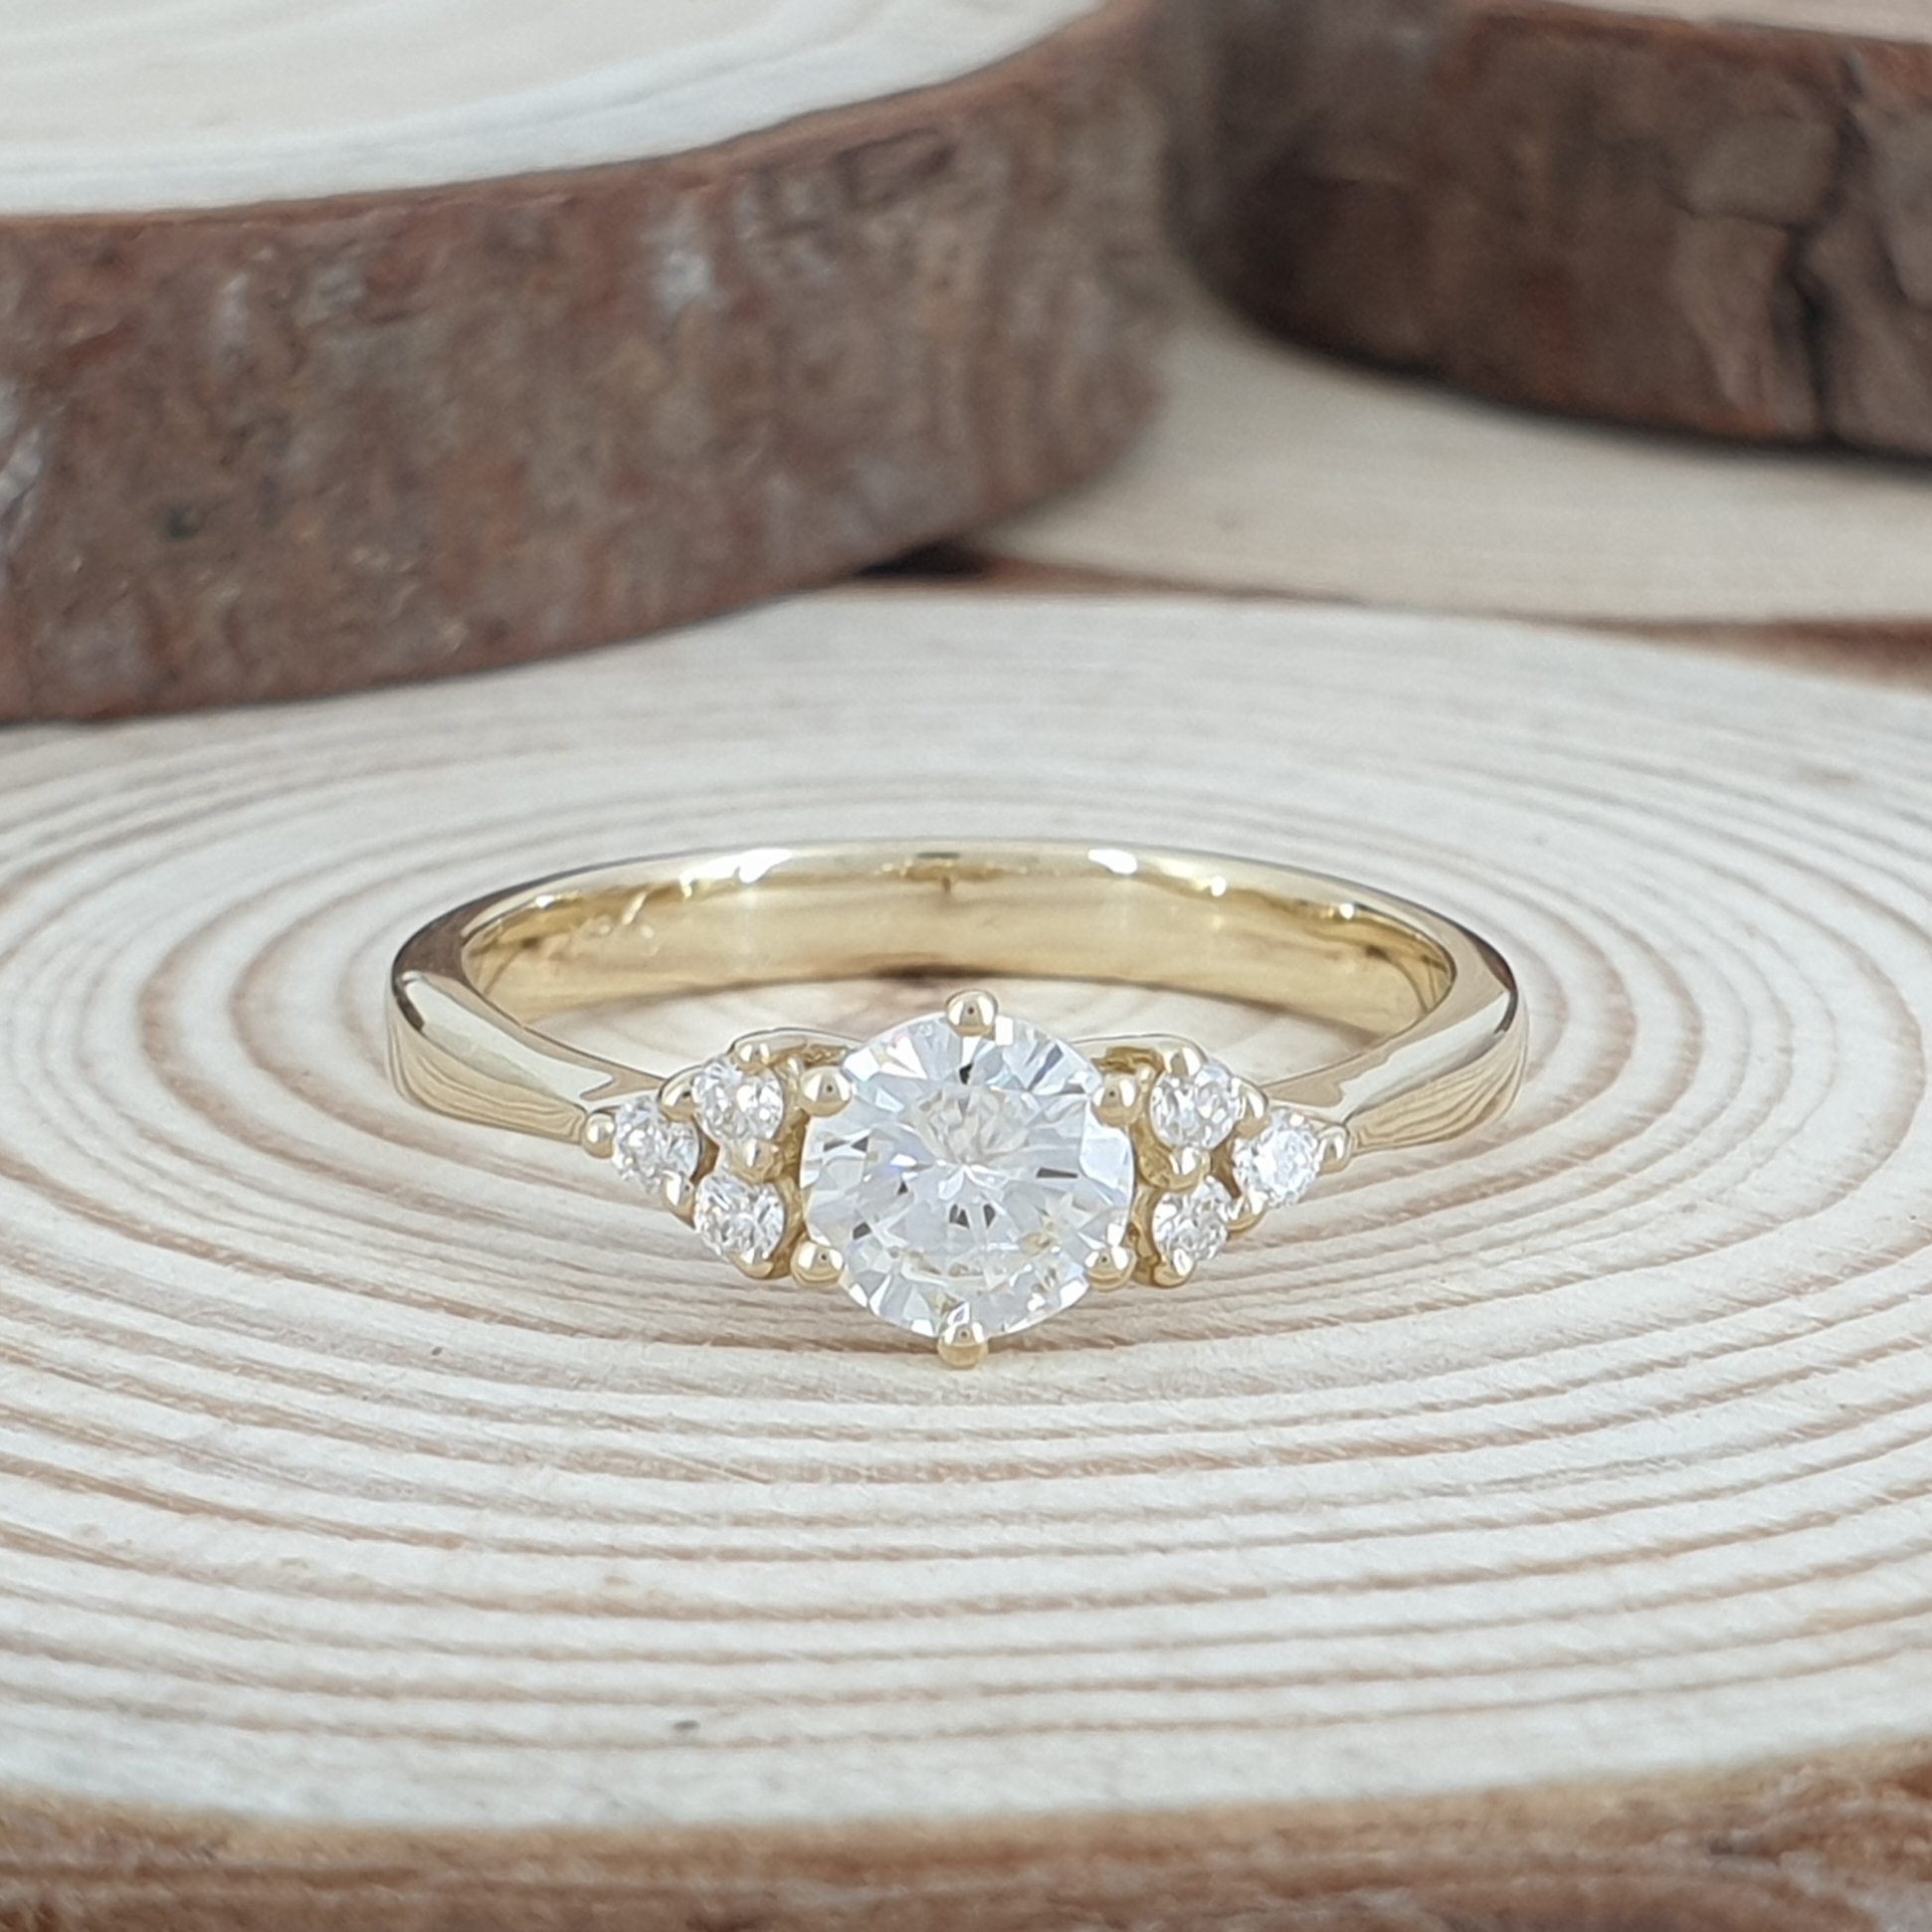 Realistic picture of A Unique Engagement Ring -unique design